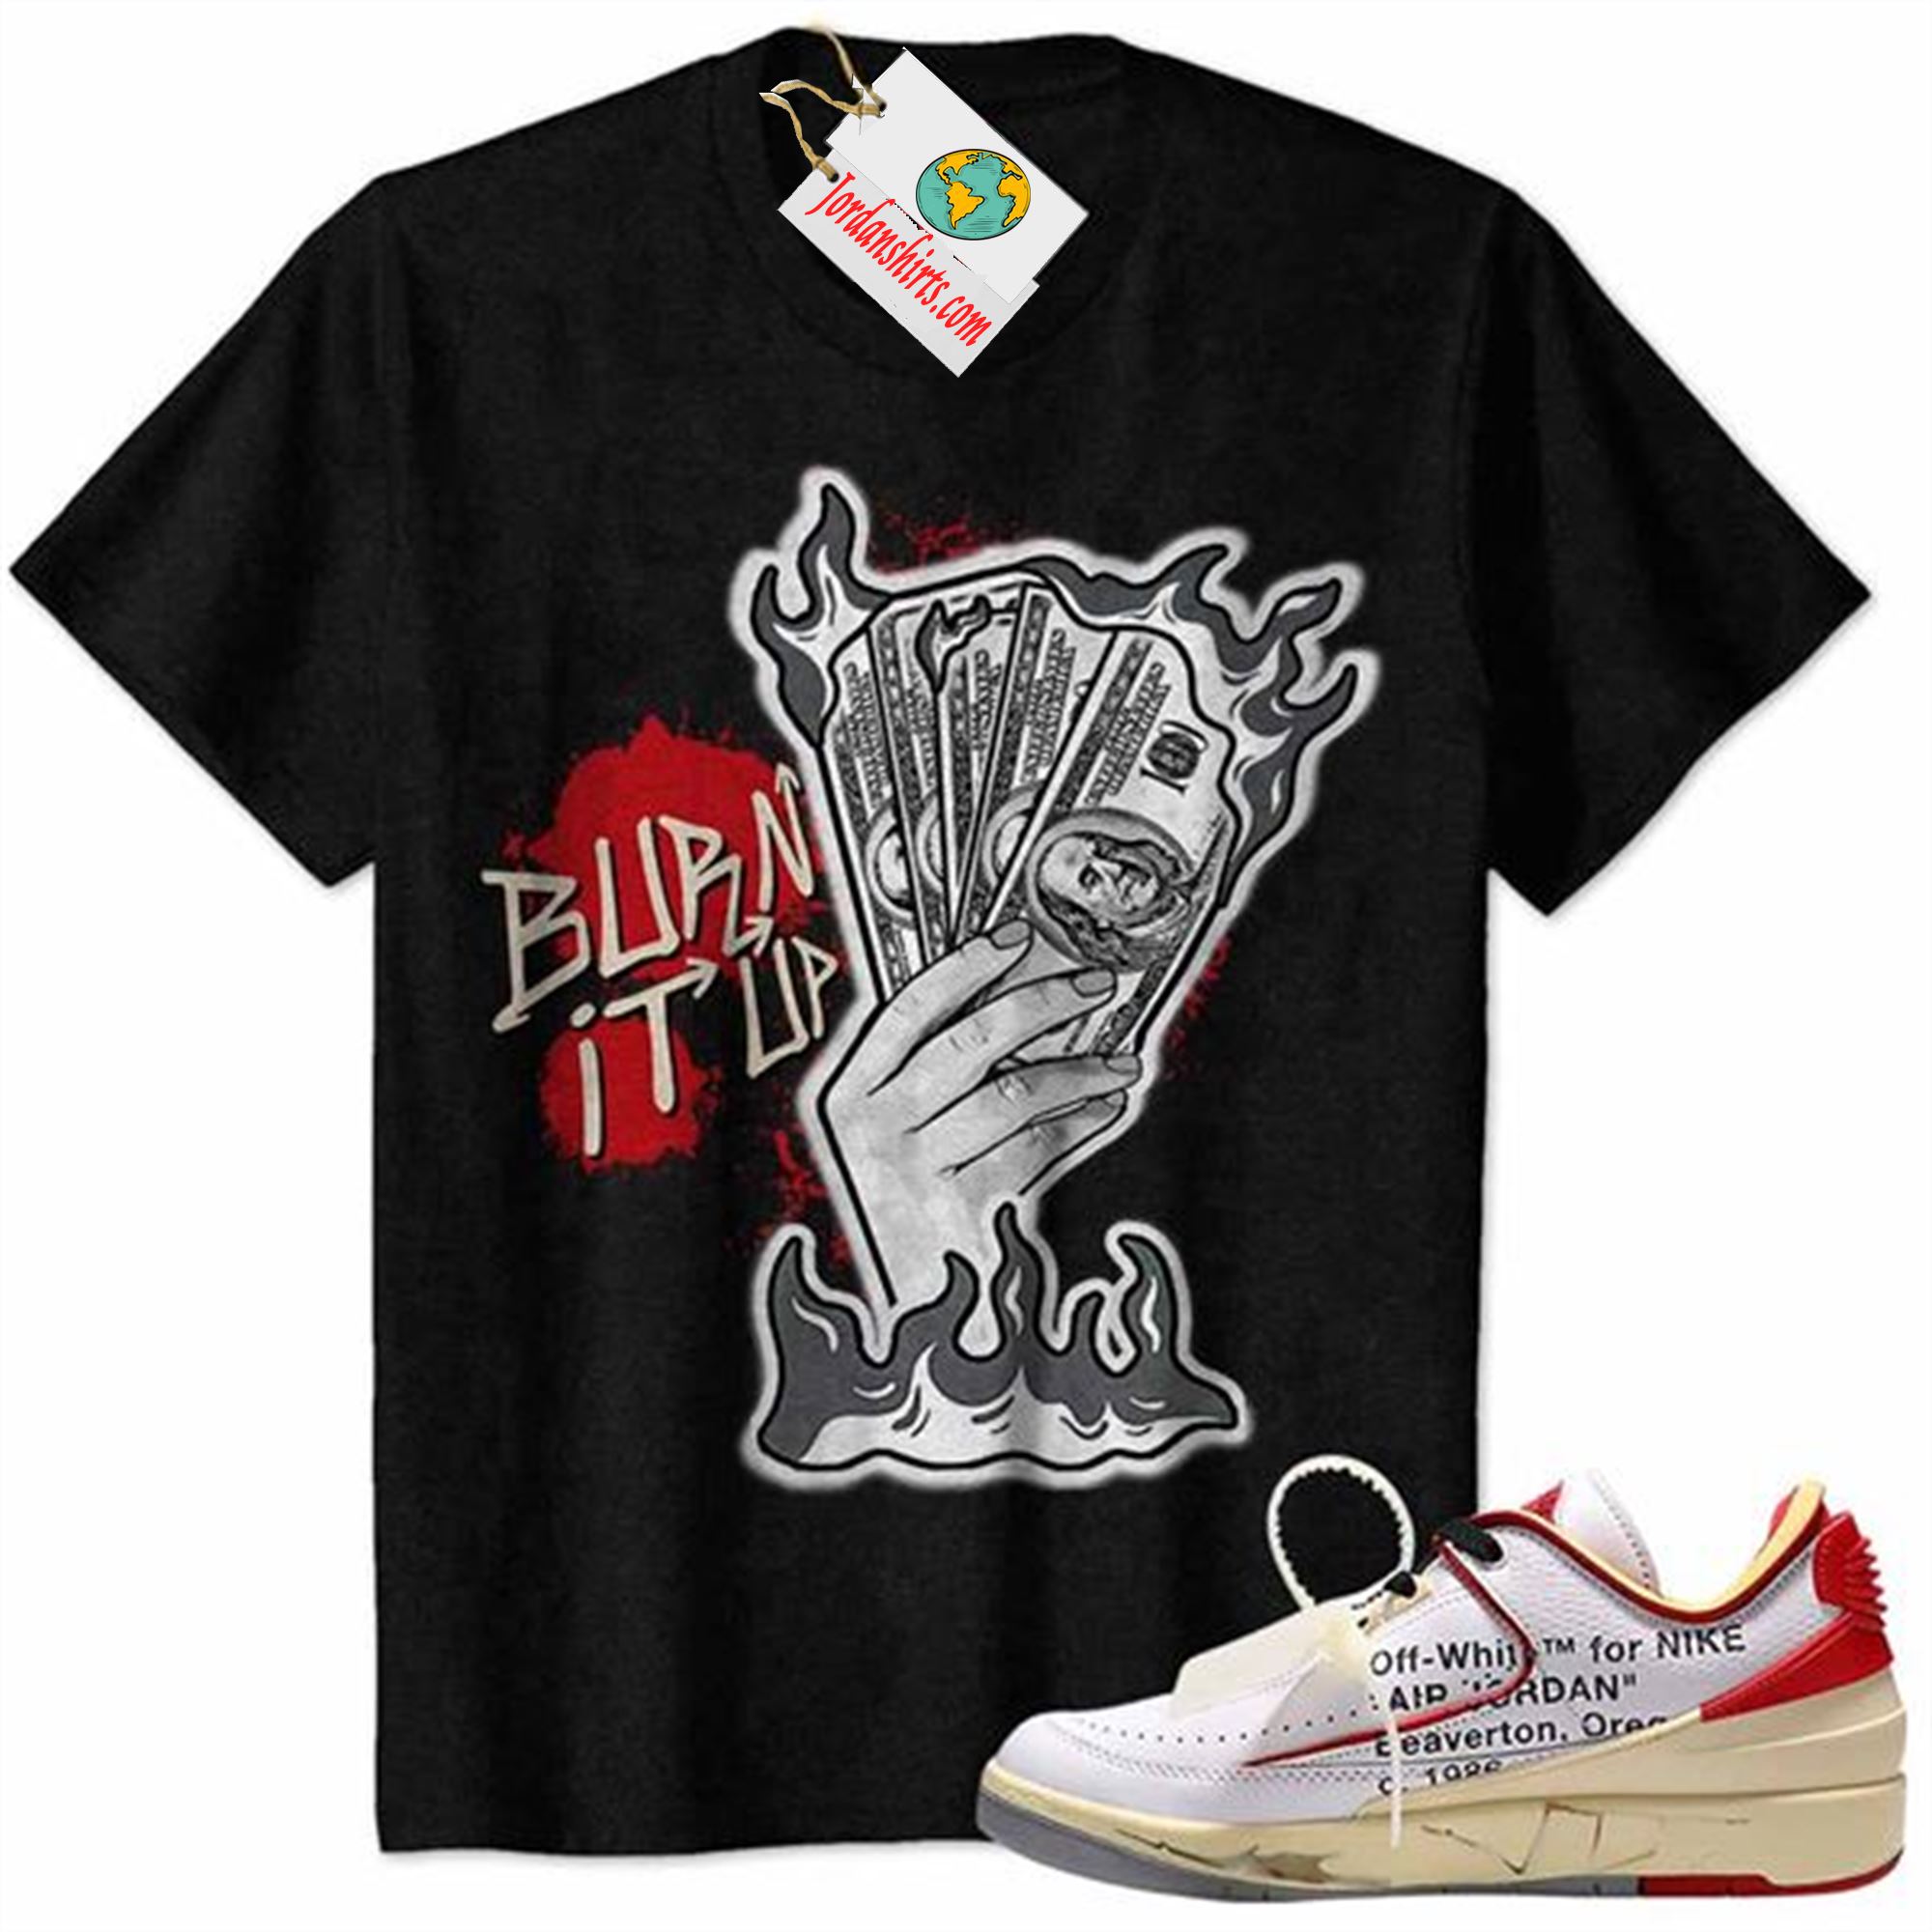 Jordan 2 Shirt, Burn It Up Black Air Jordan 2 Low White Red Off-white 2s Full Size Up To 5xl